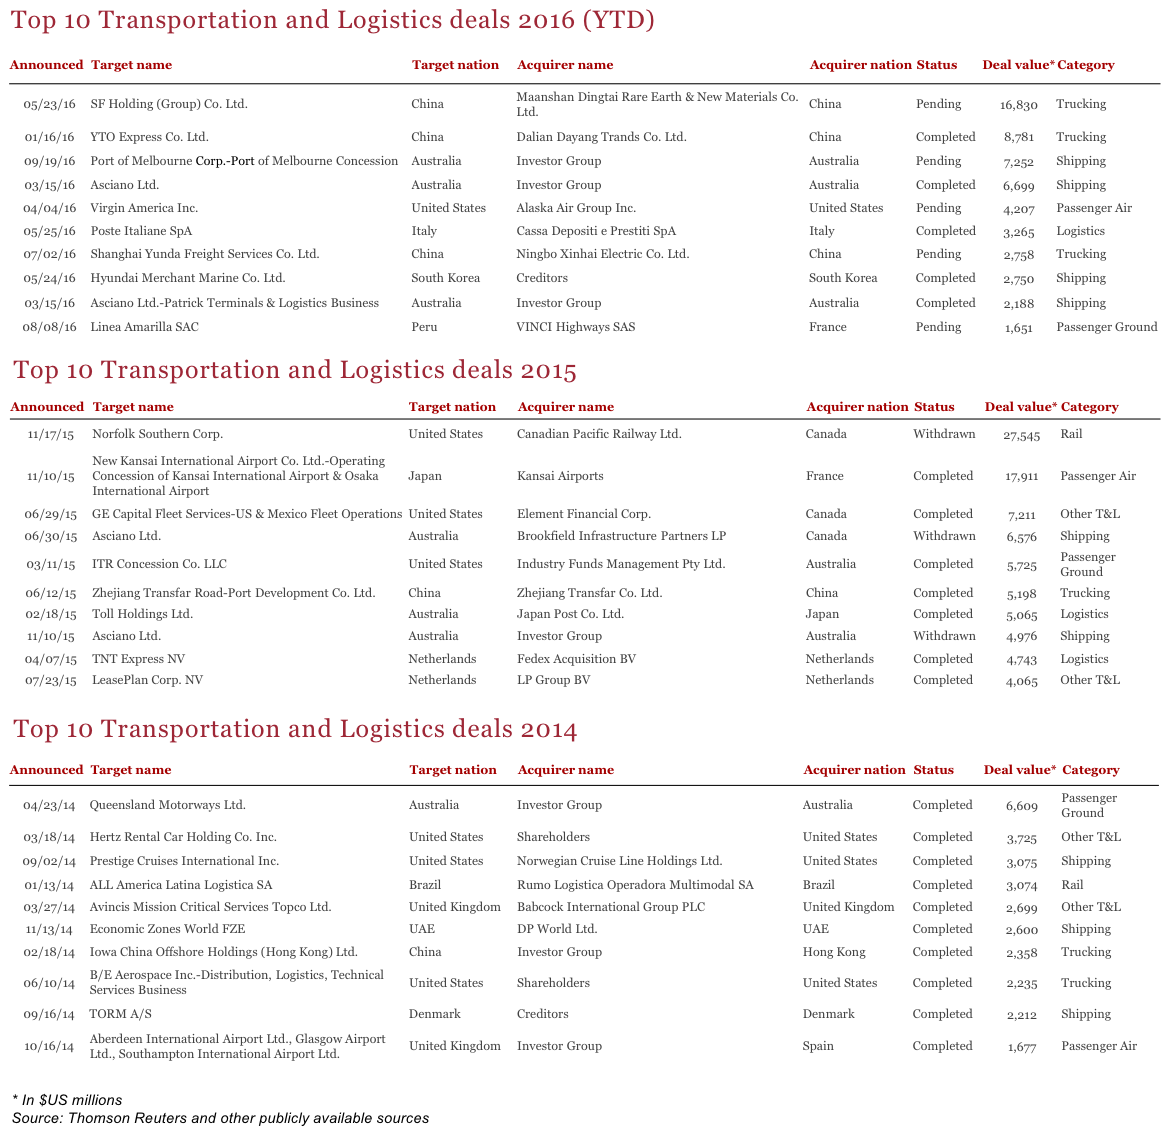 Figure 8 Top 10 Transportation and Logistics Deals